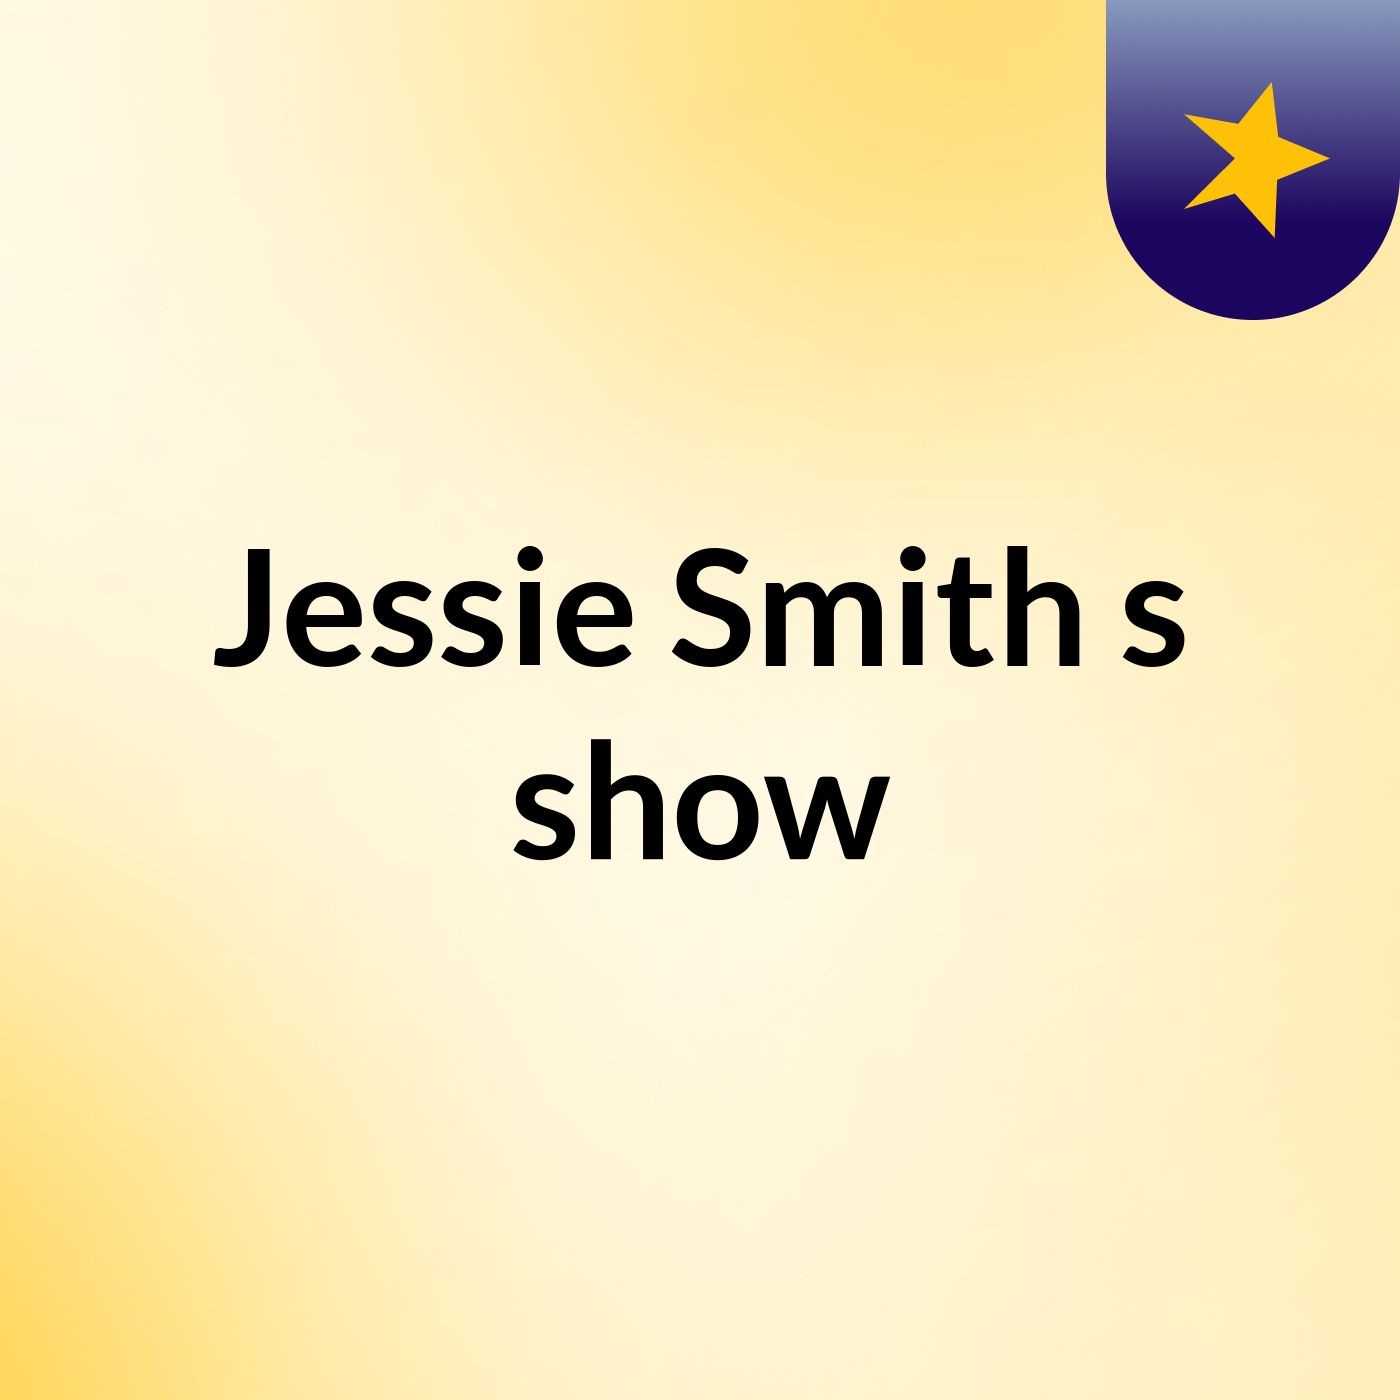 Jessie Smith's show